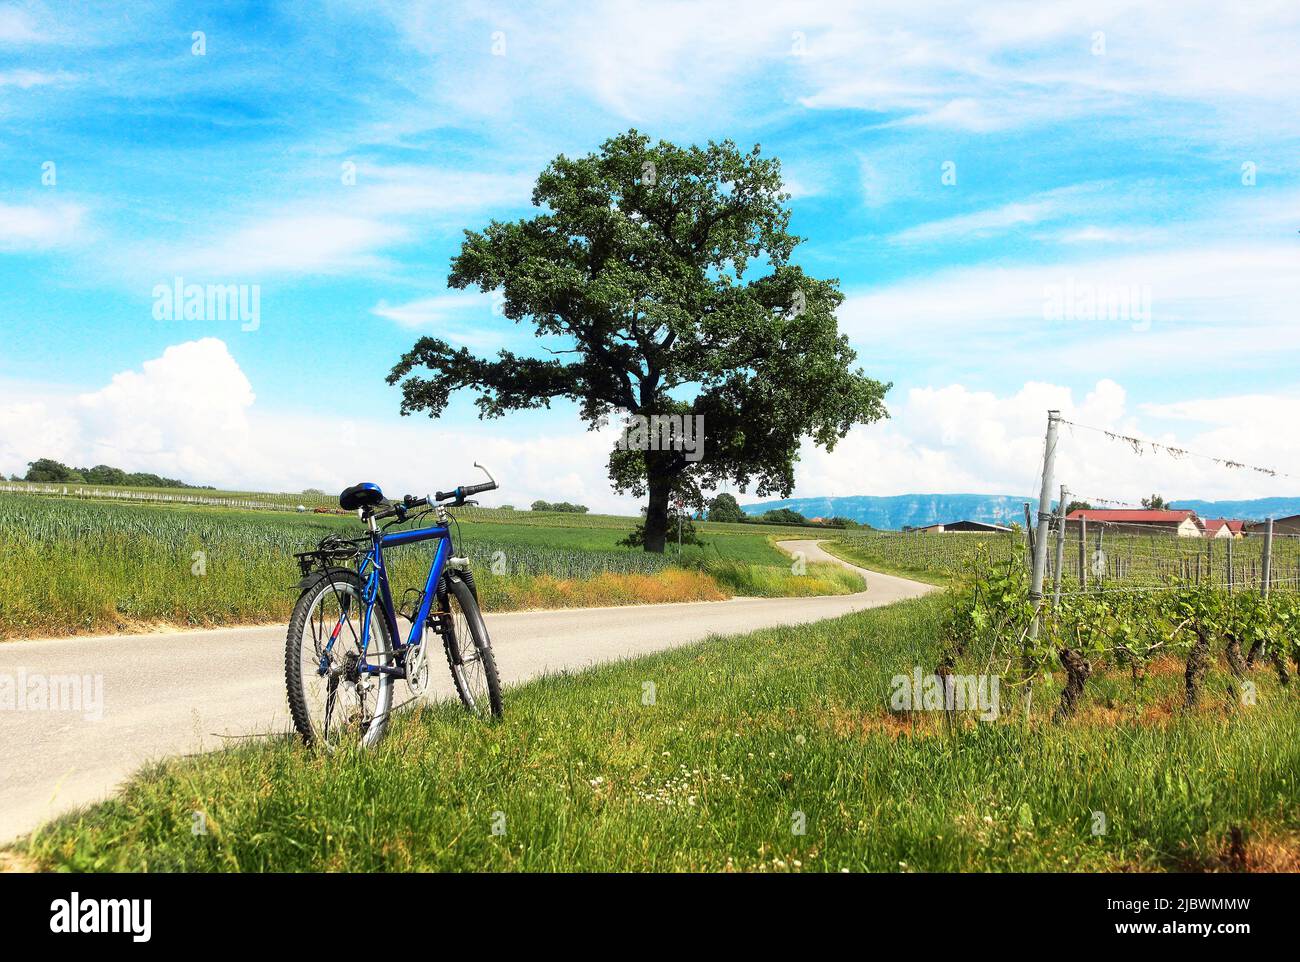 Vélo de montagne sur une route de campagne sur fond d'un paysage rural pittoresque dans la région de Genève, en Suisse. Banque D'Images